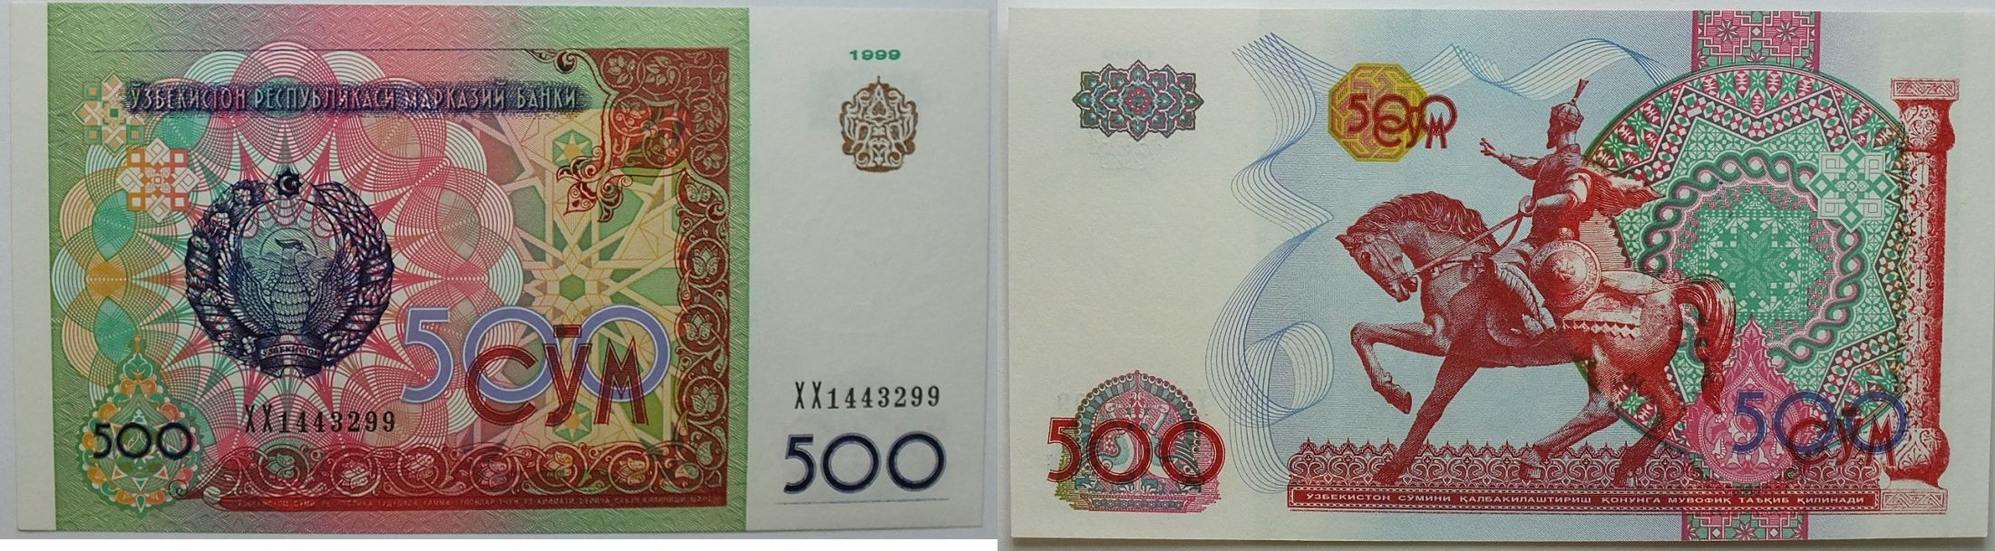 Киргизский сом к суму. Таджикские сомы. Узбекские тенге. Сум Узбекистан. Банкноты Узбекистана.